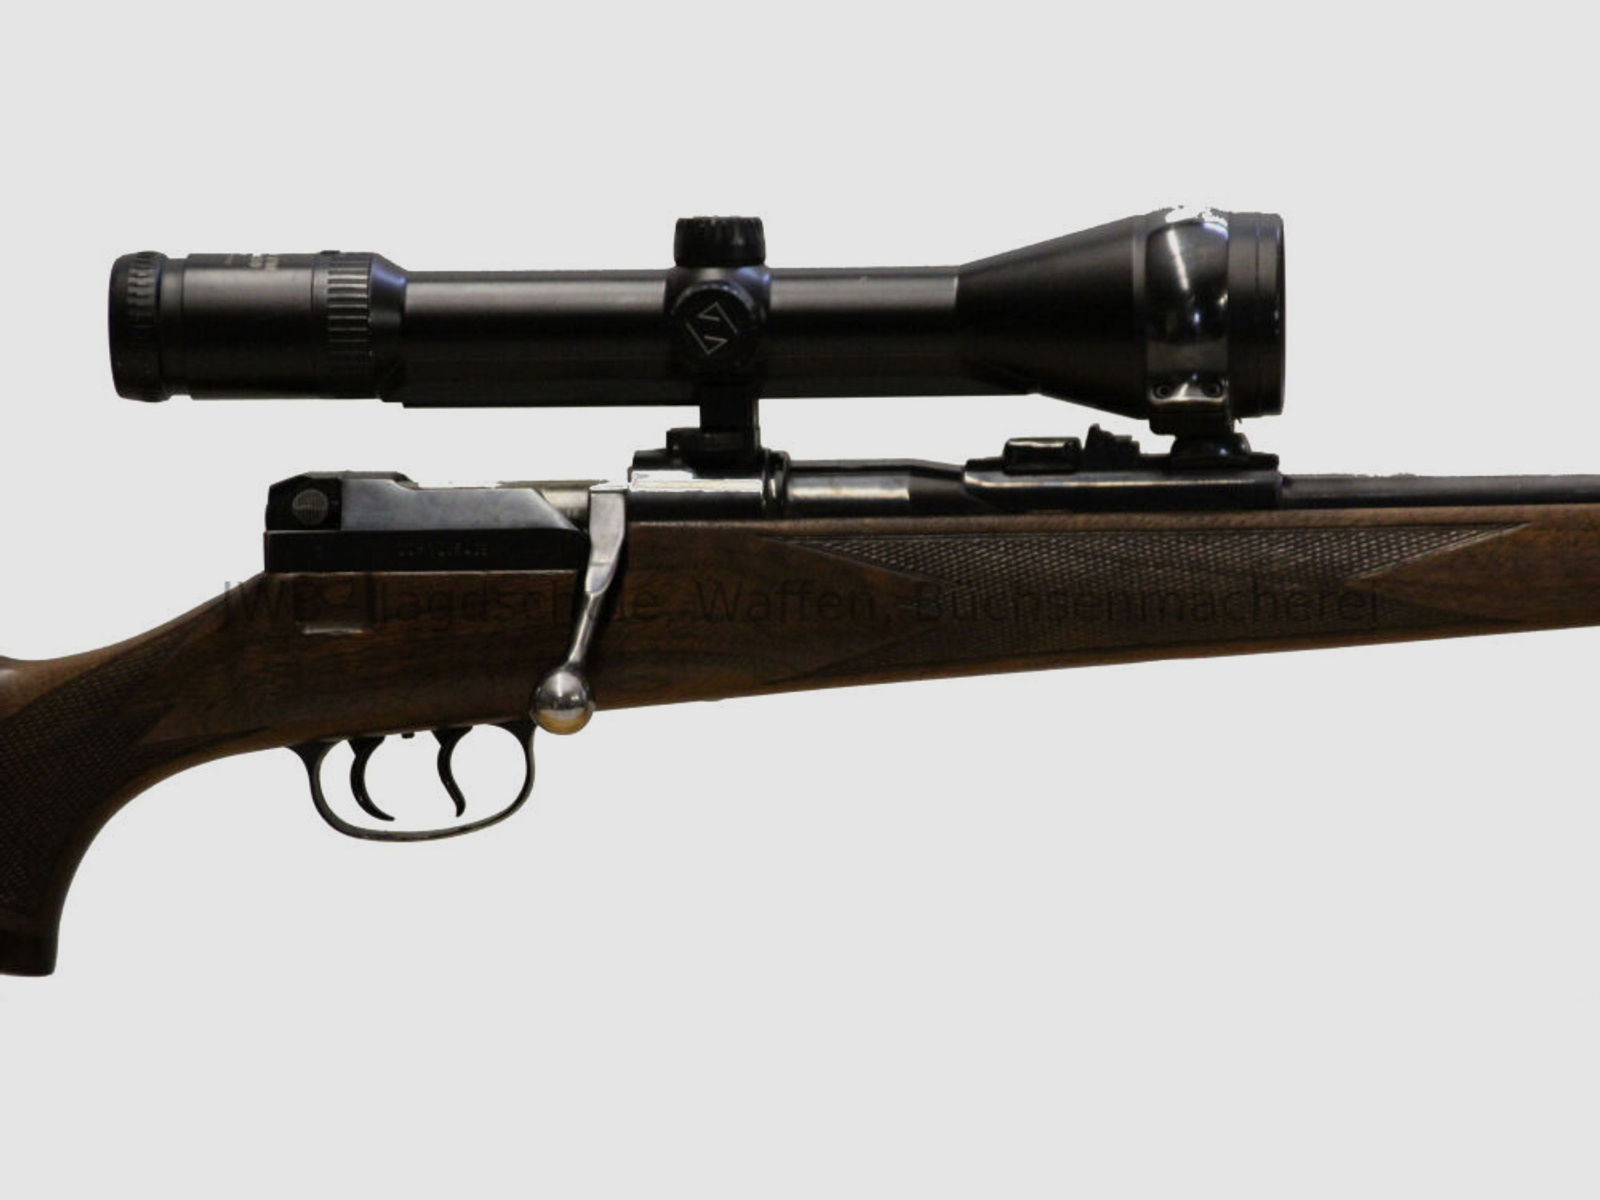 Mauser 66 mit Zeiss Diavari mit beleuchtetem Absehen	 7x64